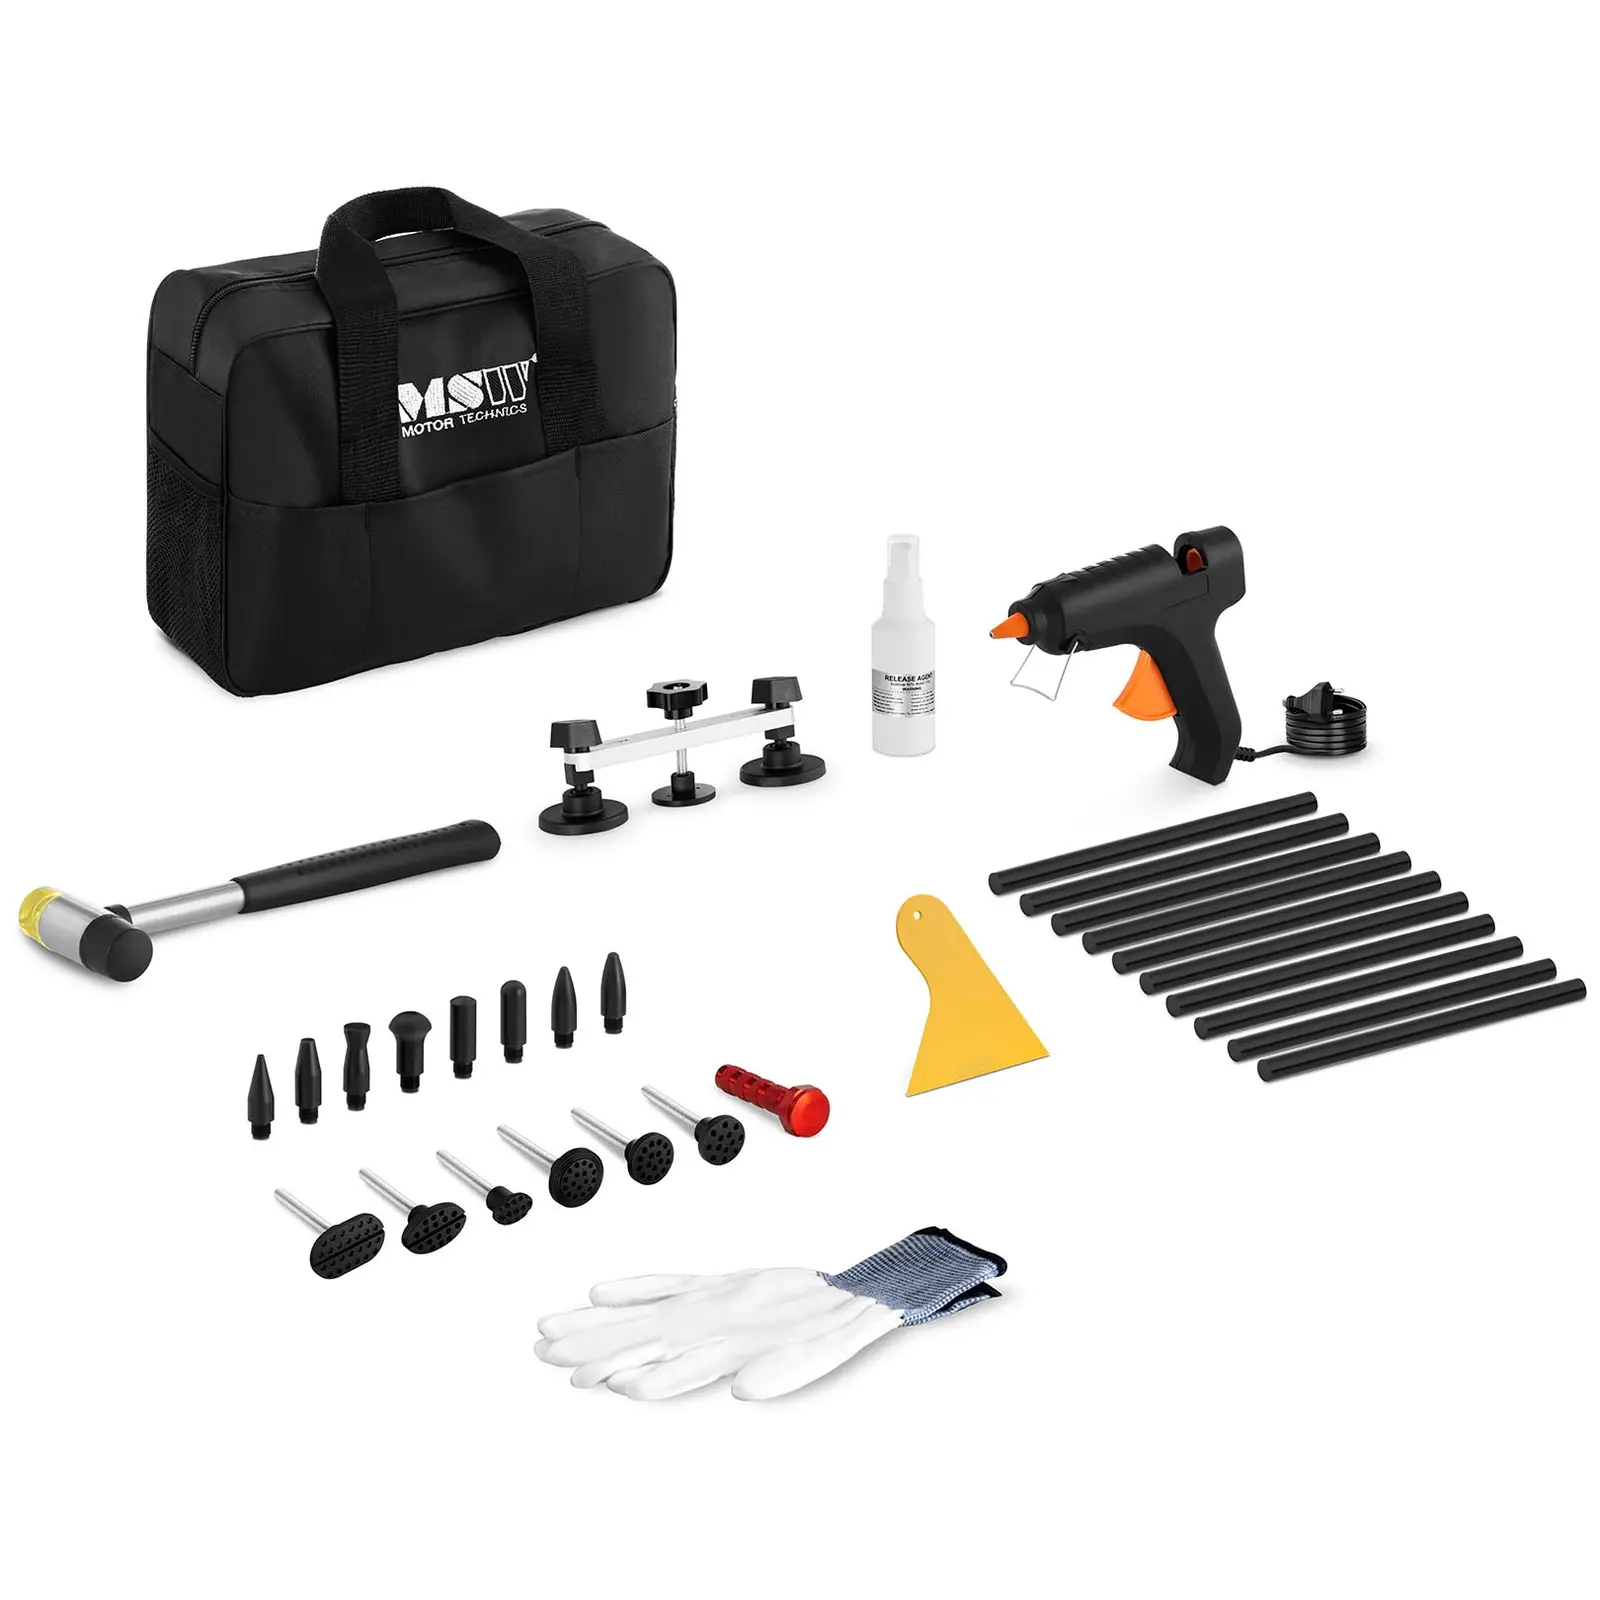 Kit de herramientas para reparar abolladuras - 25 piezas